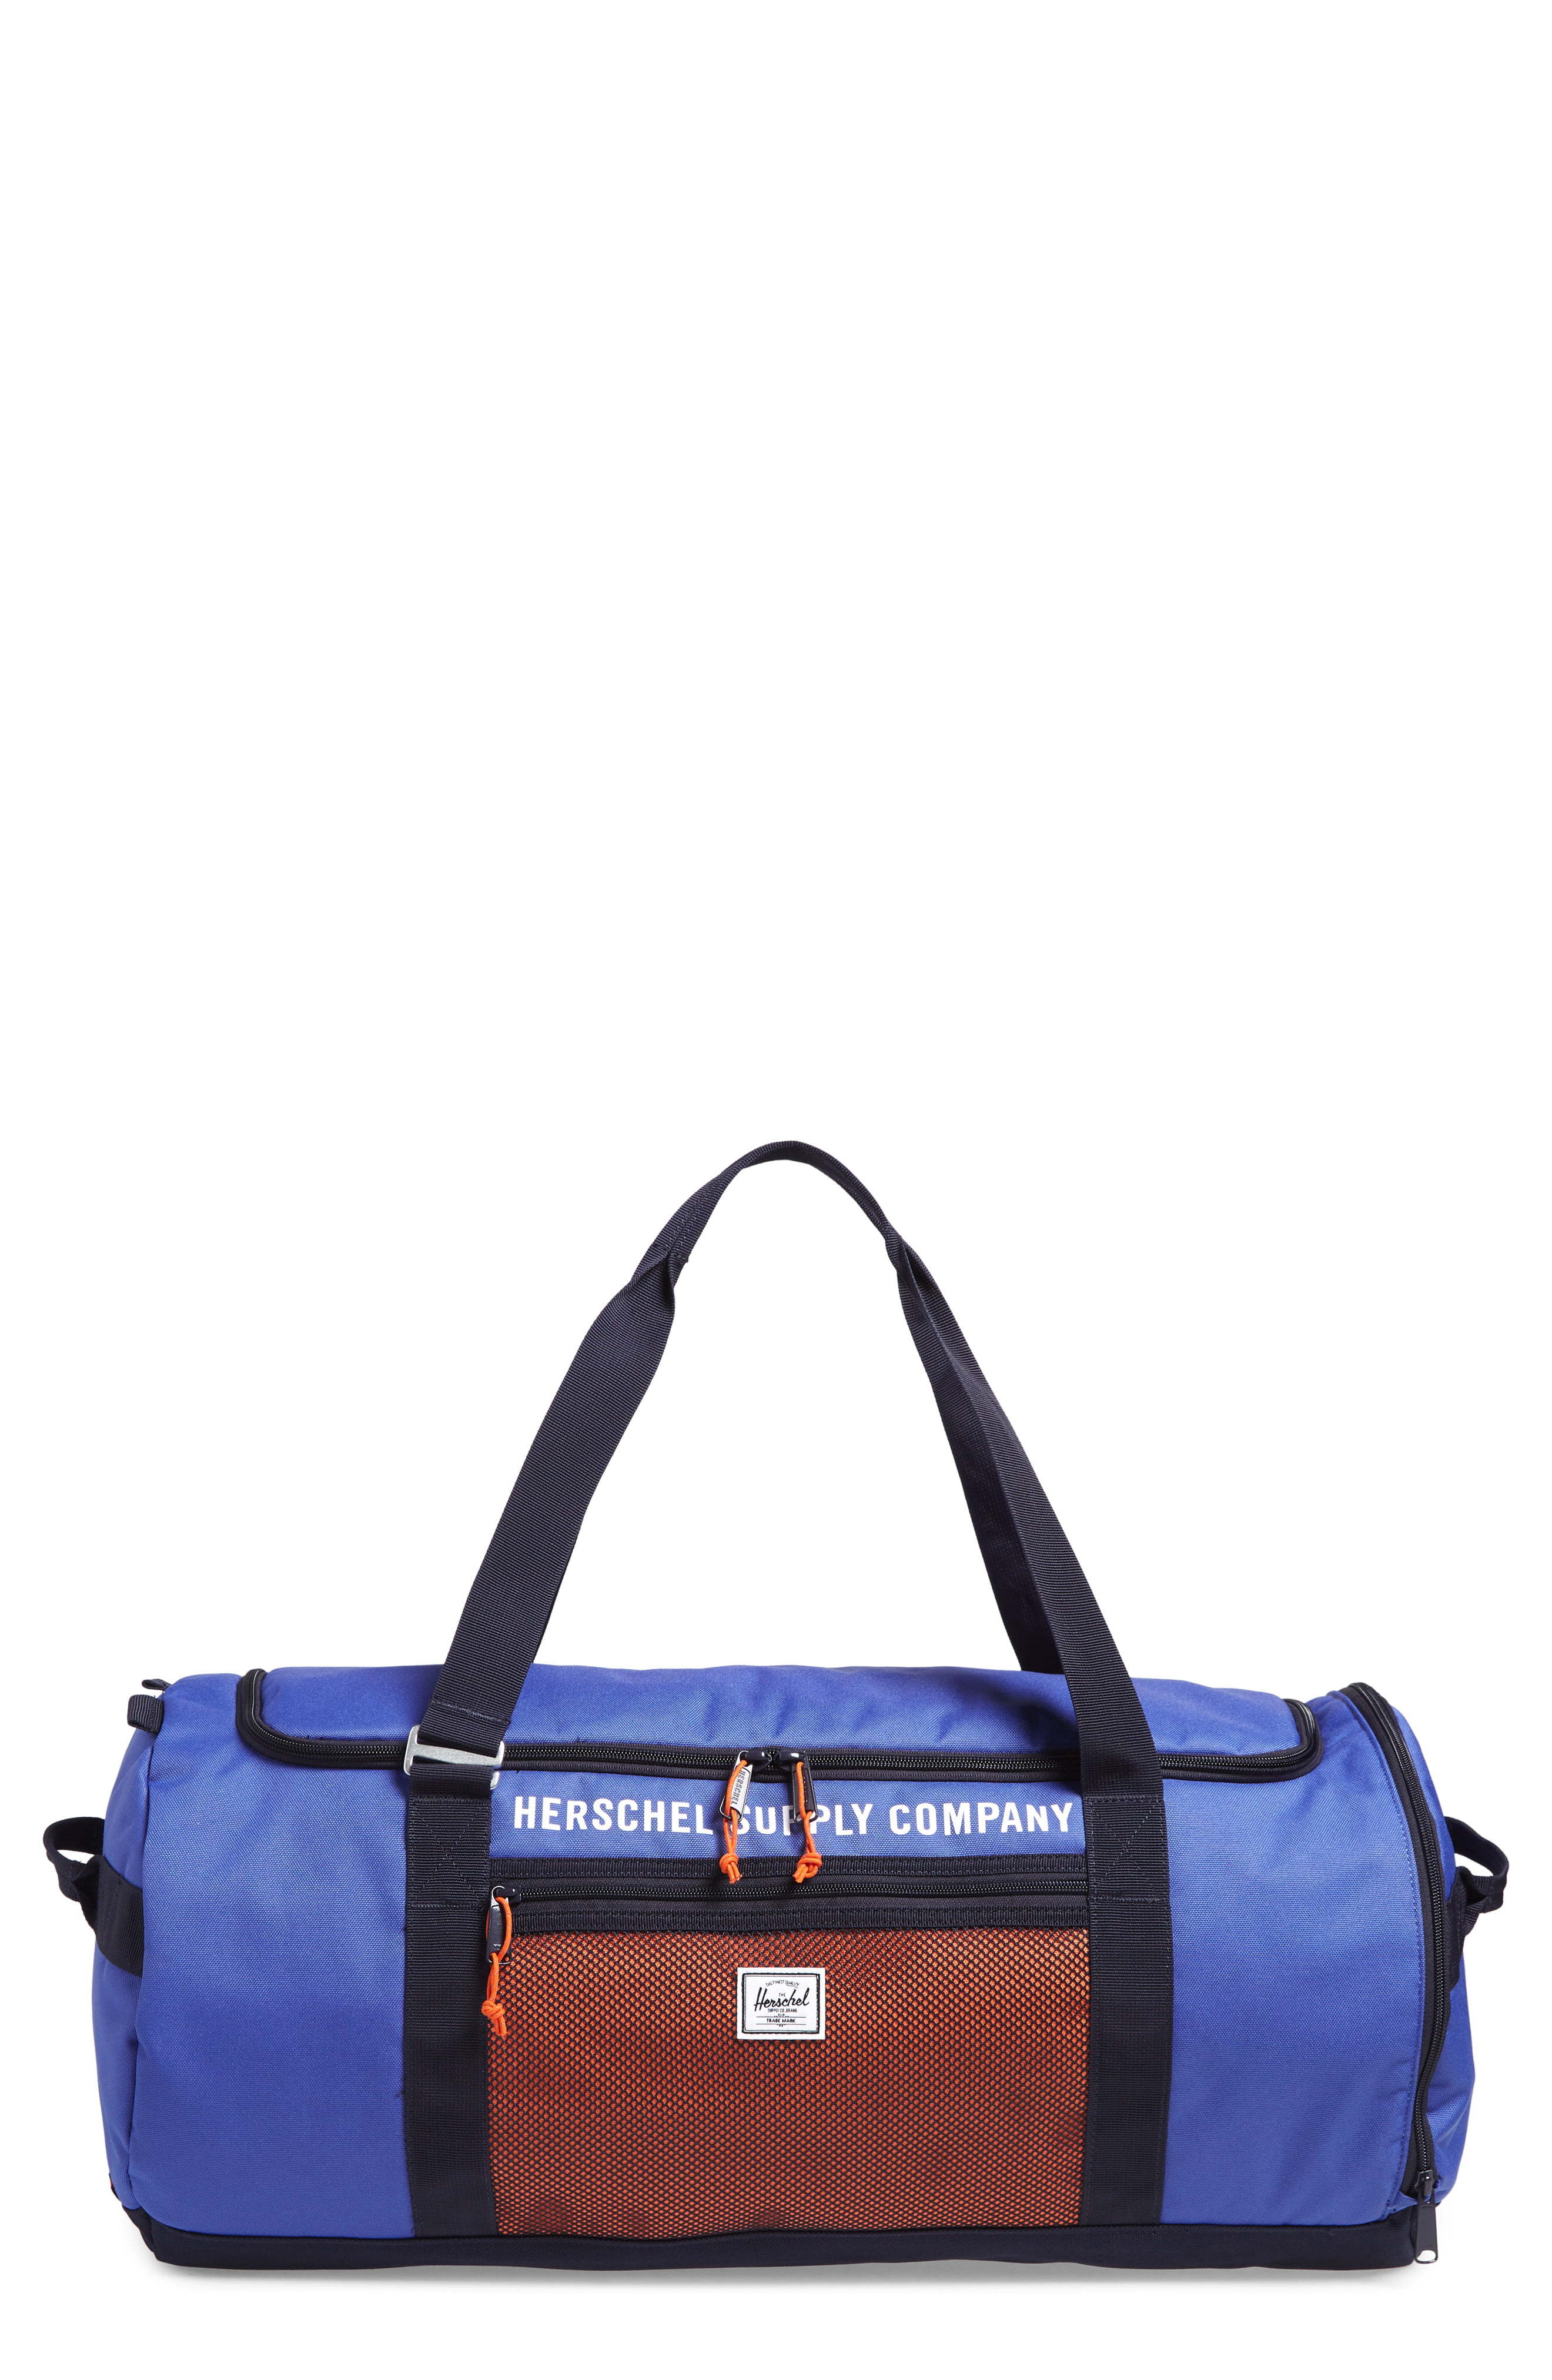 Herschel Supply Co. Sutton Duffle Bag, $53 | Nordstrom | Lookastic